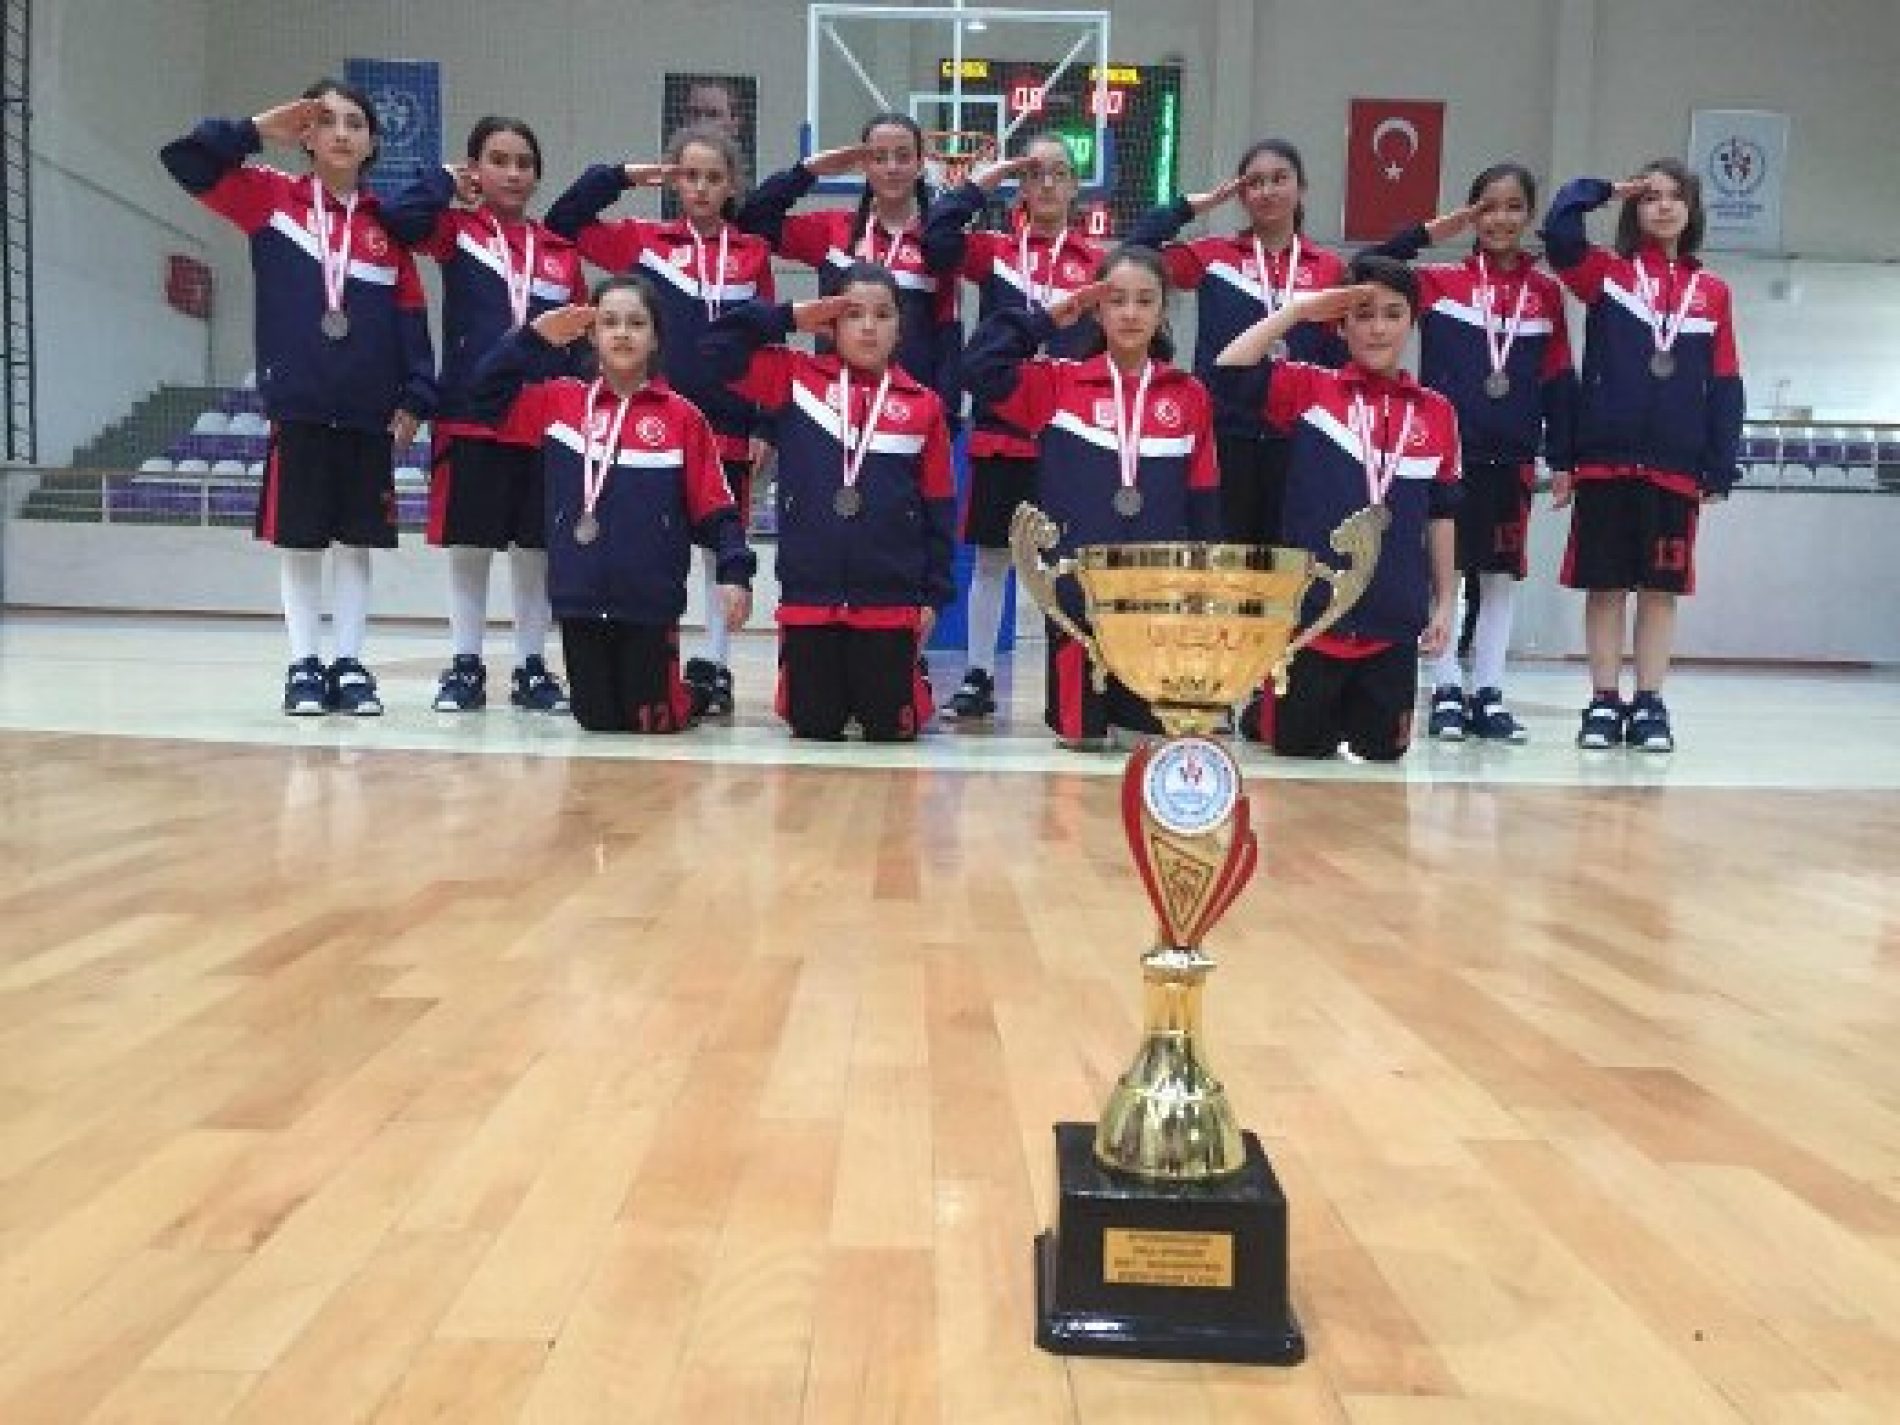 Afyonkarahisar Yunus Emre Ortaokulu Kız Basketbol Takımı “TYSD 90. YIL” Logolu Formaları İle Kupayı Kazandı